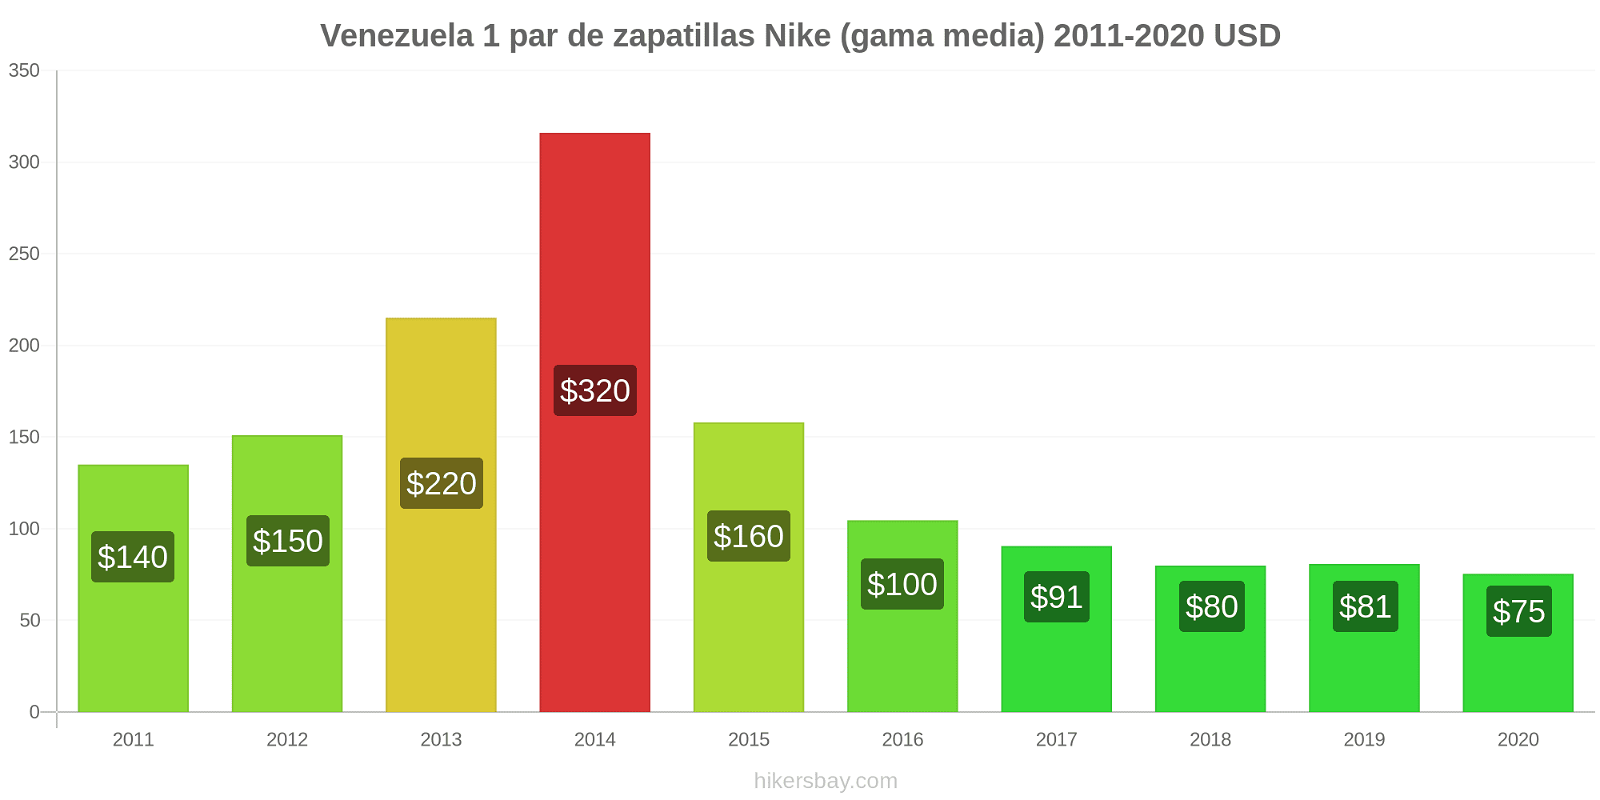 Venezuela cambios de precios 1 par de zapatillas Nike (gama media) hikersbay.com